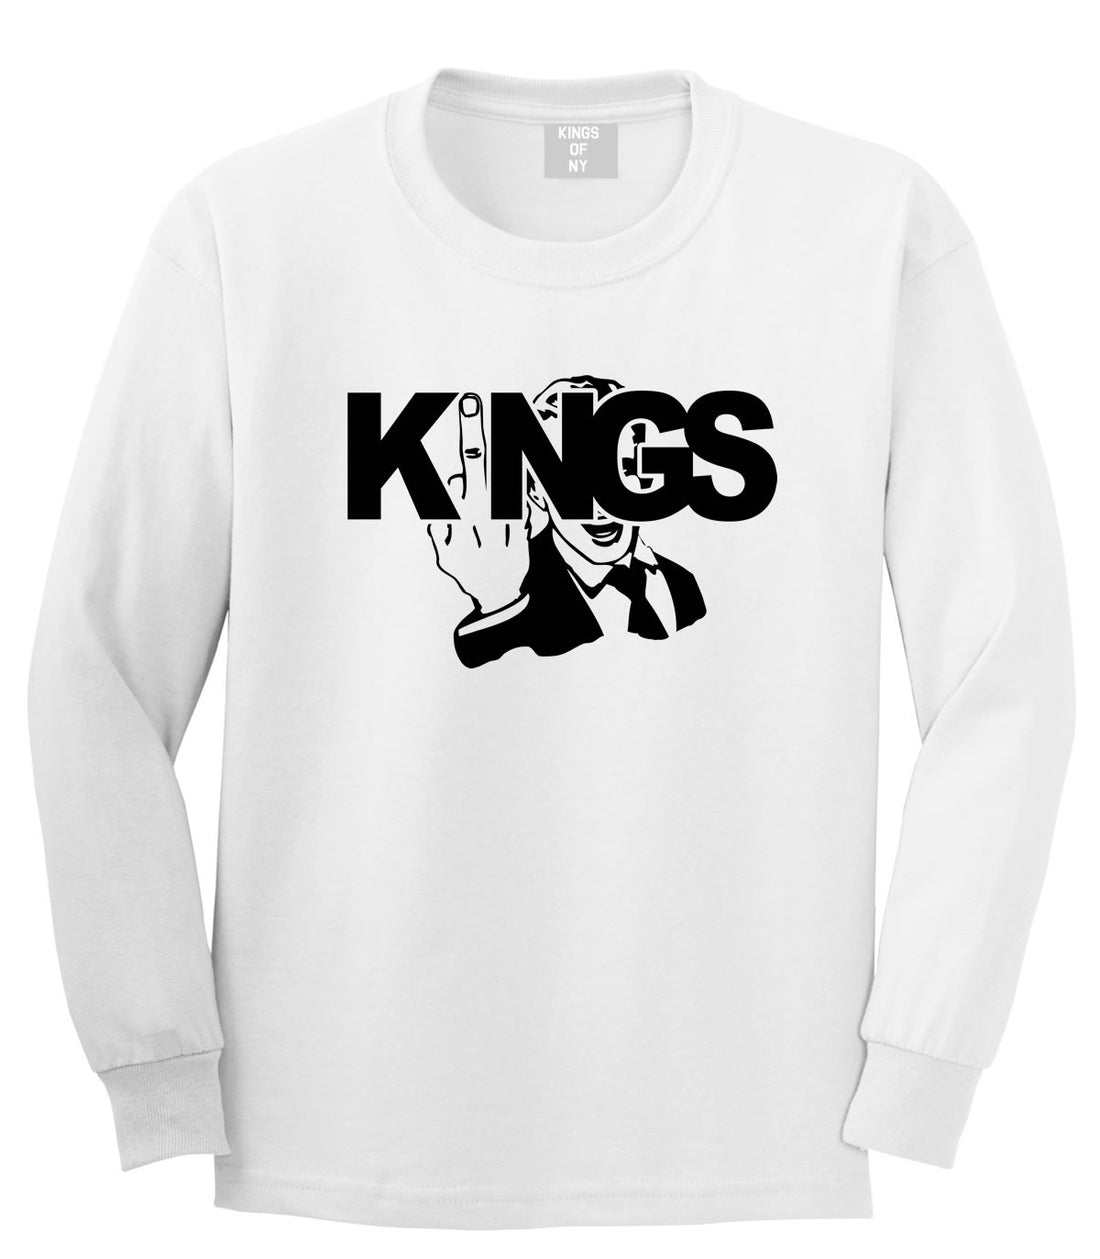 KINGS Middle Finger Long Sleeve T-Shirt in White